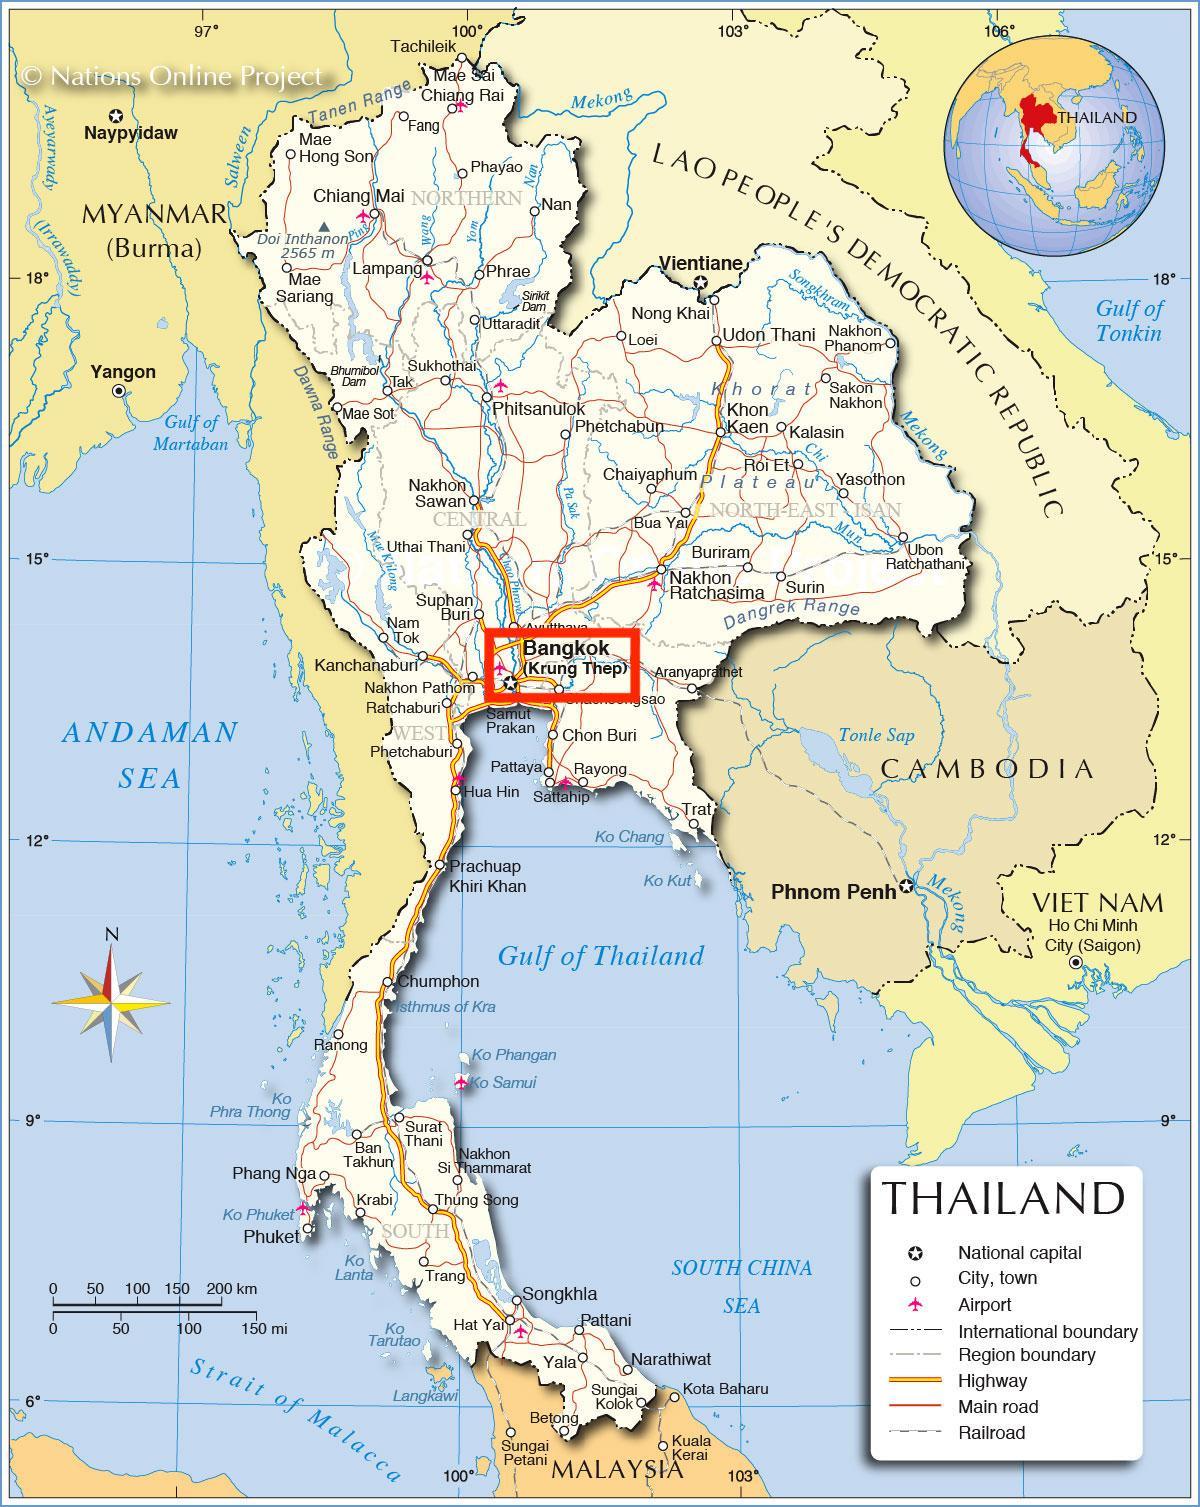 Banguecoque (Krung Thep) no mapa da Tailândia